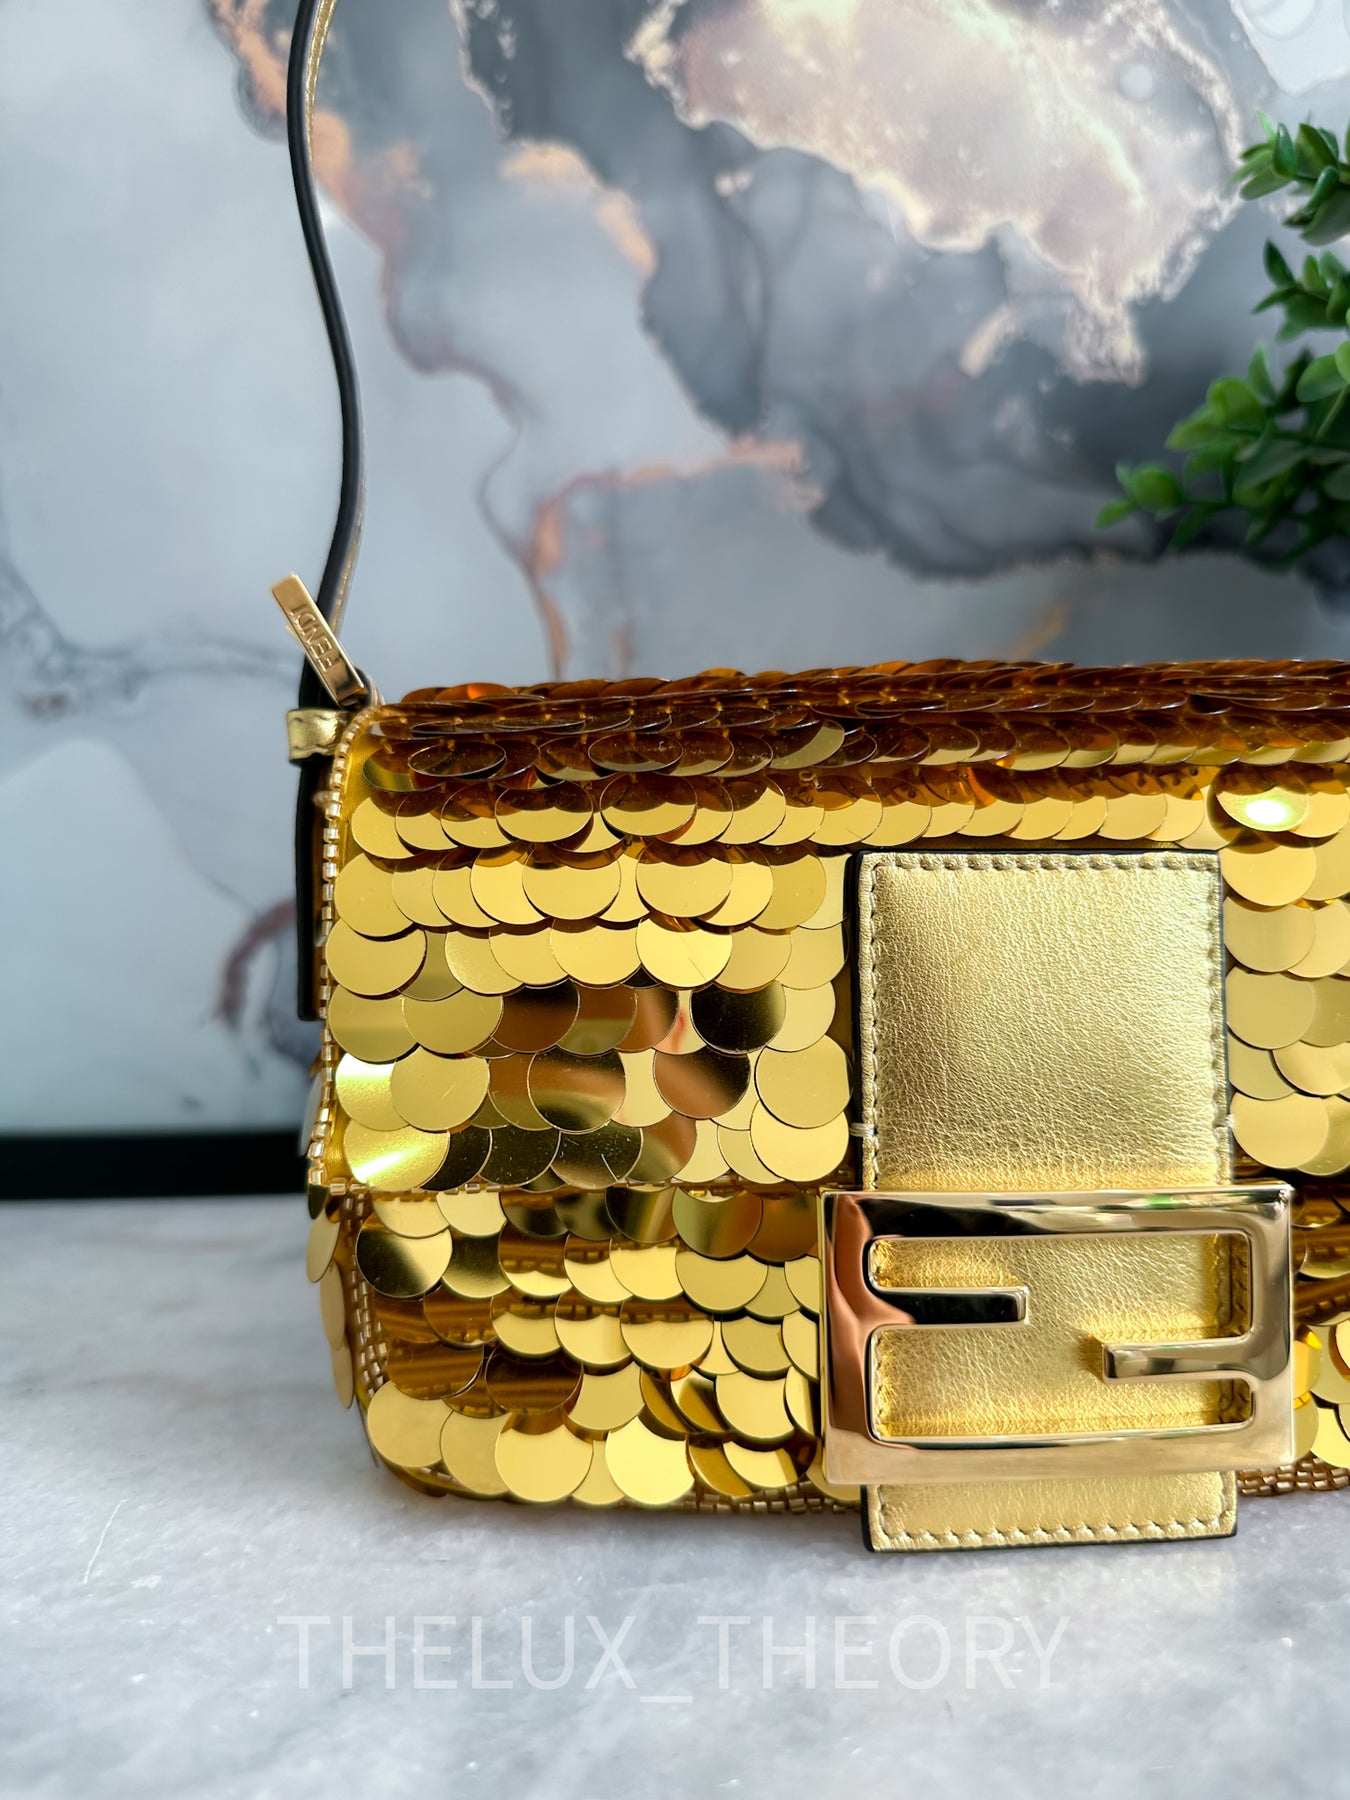 Baguette glitter handbag Fendi Gold in Glitter - 24186205